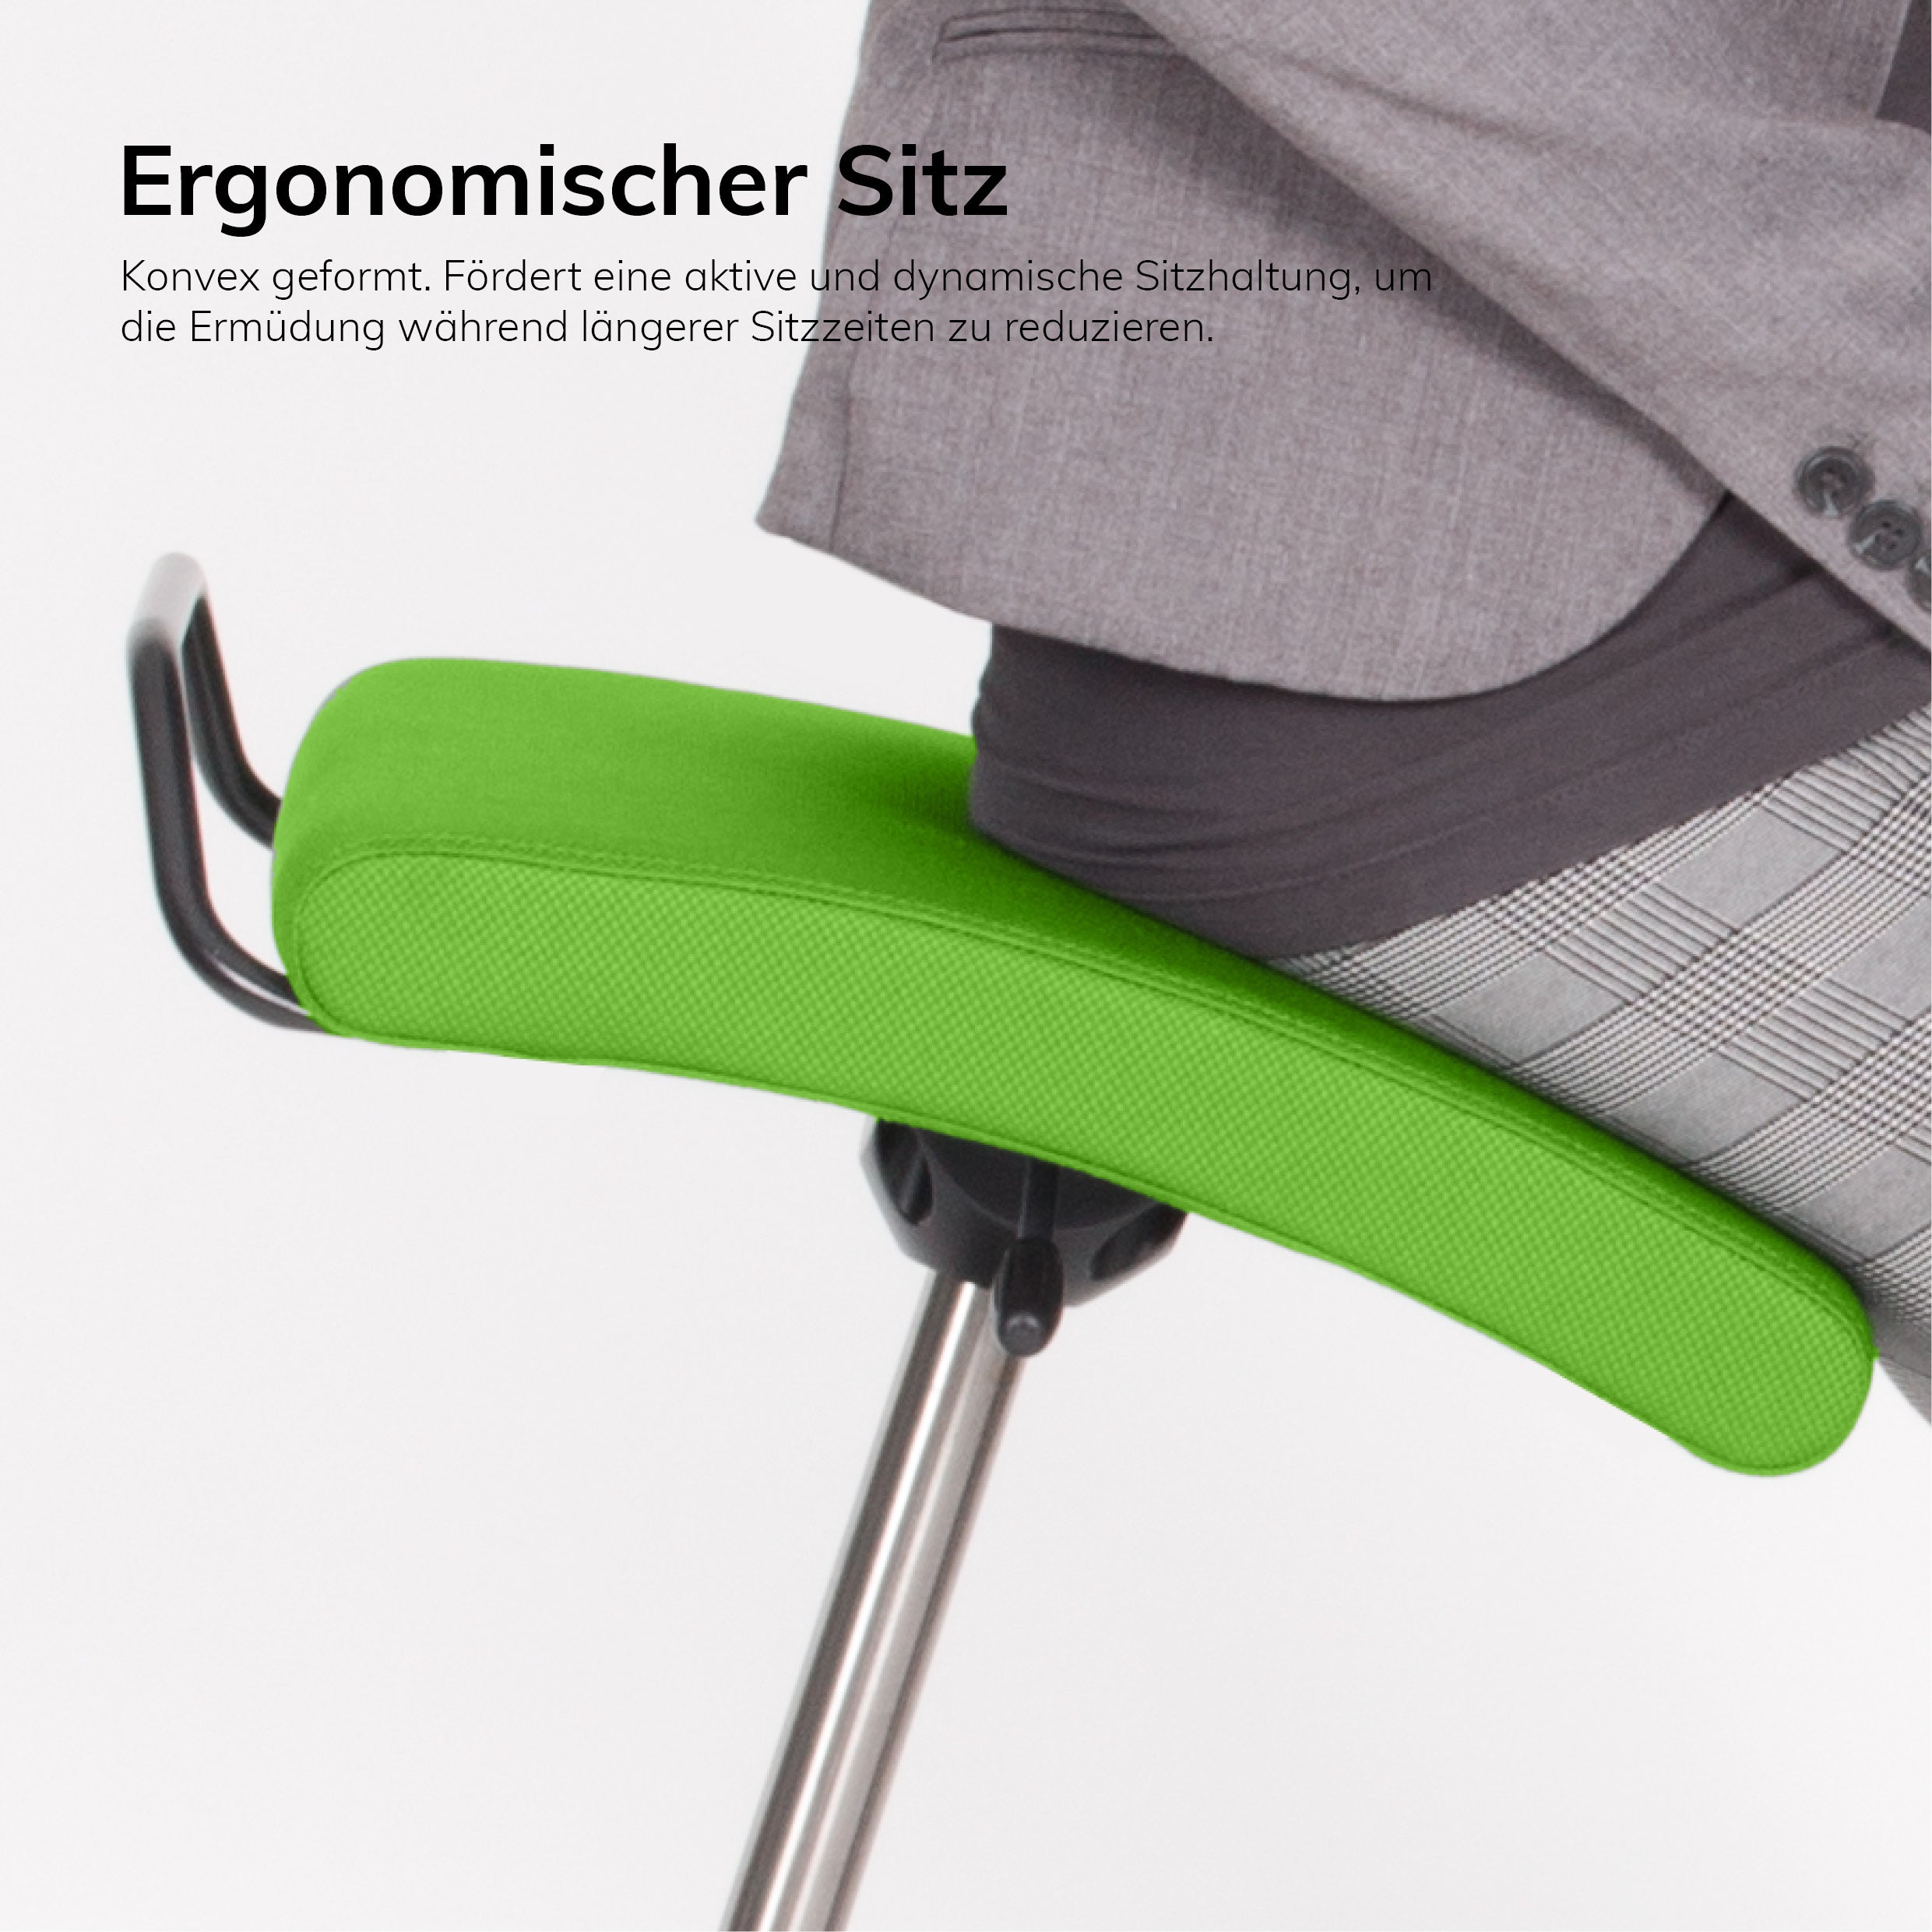 Dark Olive Green Ergonomischer Bürohocker Hocker - Stehhilfe mit Bodenwippe Lento Sella Activa SA10 - verhindert Rückenschmerzen und Verspannungen lento-sella-activa-ergonomische-sitz-stehhilfe-5.jpg Lento